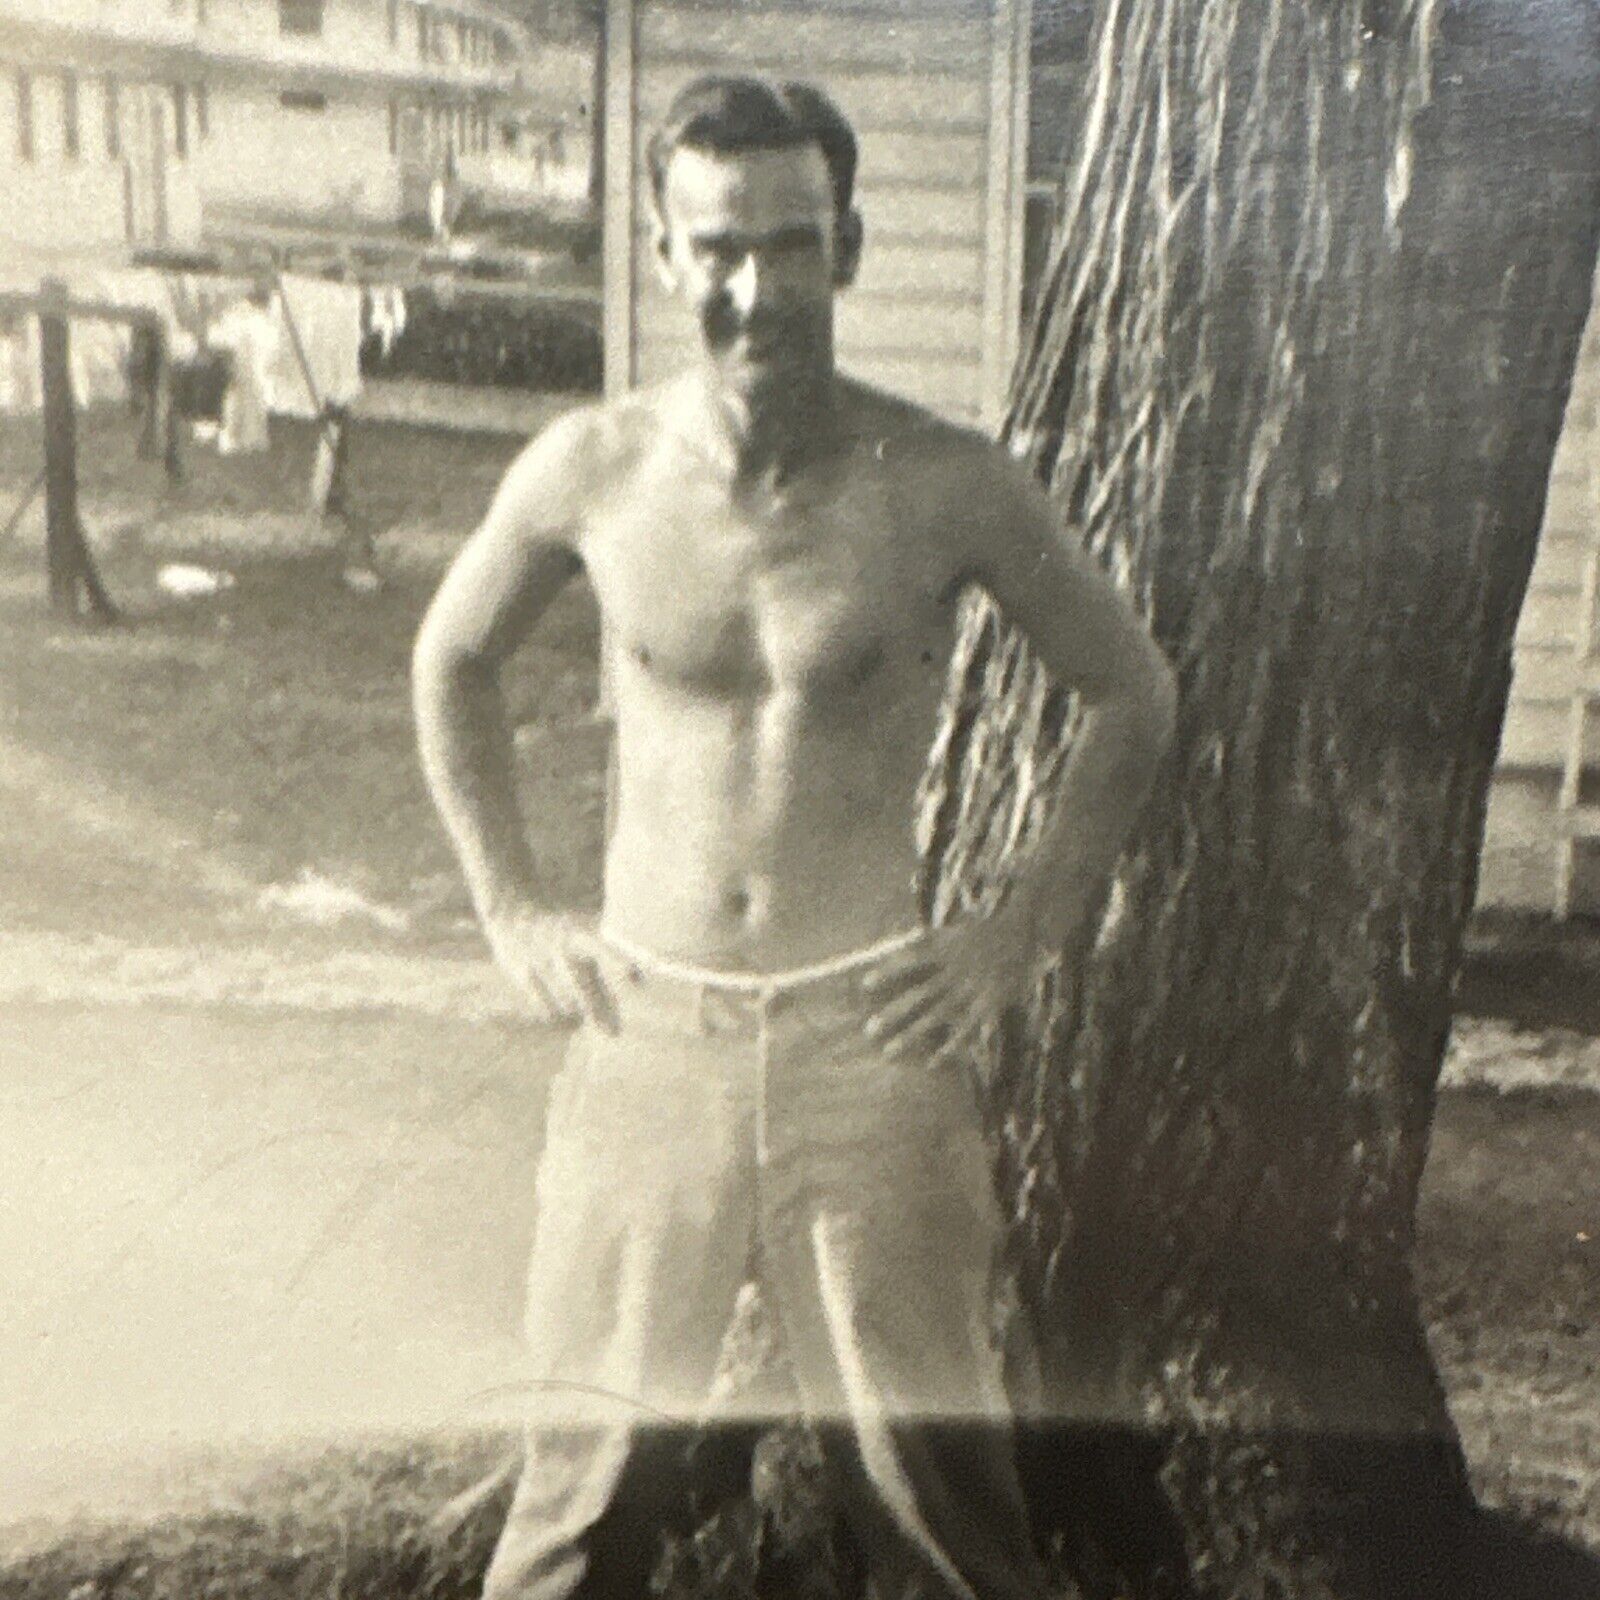 VINTAGE PHOTO Beefcake Muscular Shirtless Man, Gay Interest Original